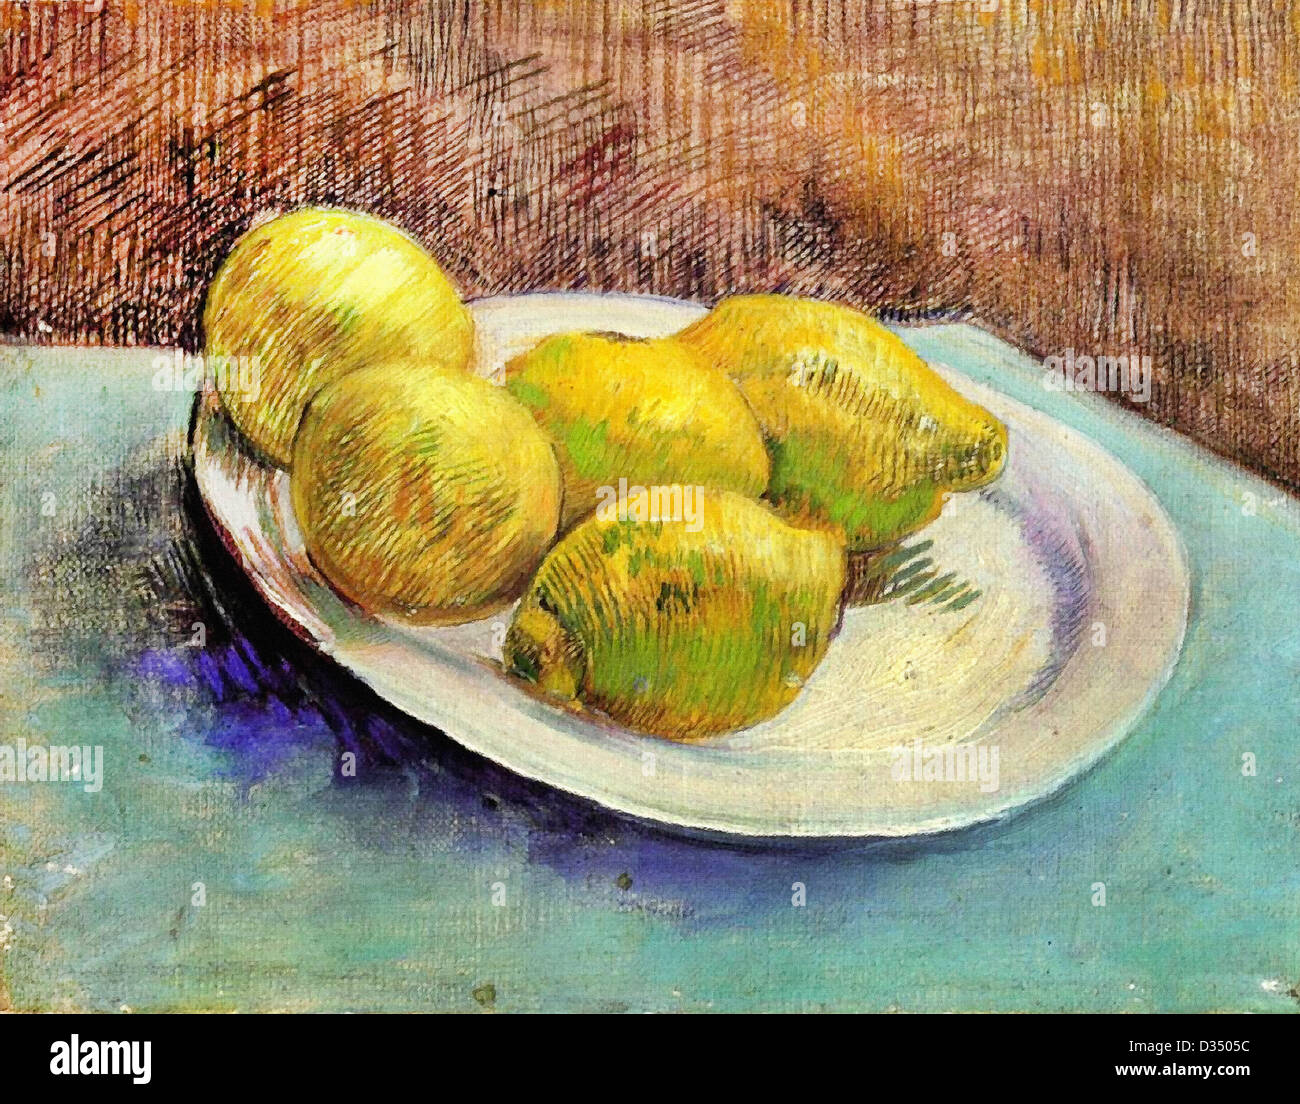 Vincent Van Gogh, Stillleben mit Zitronen auf einem Teller. 1887. Post-Impressionismus. Öl auf Leinwand. Van Gogh Museum, Amsterdam Stockfoto